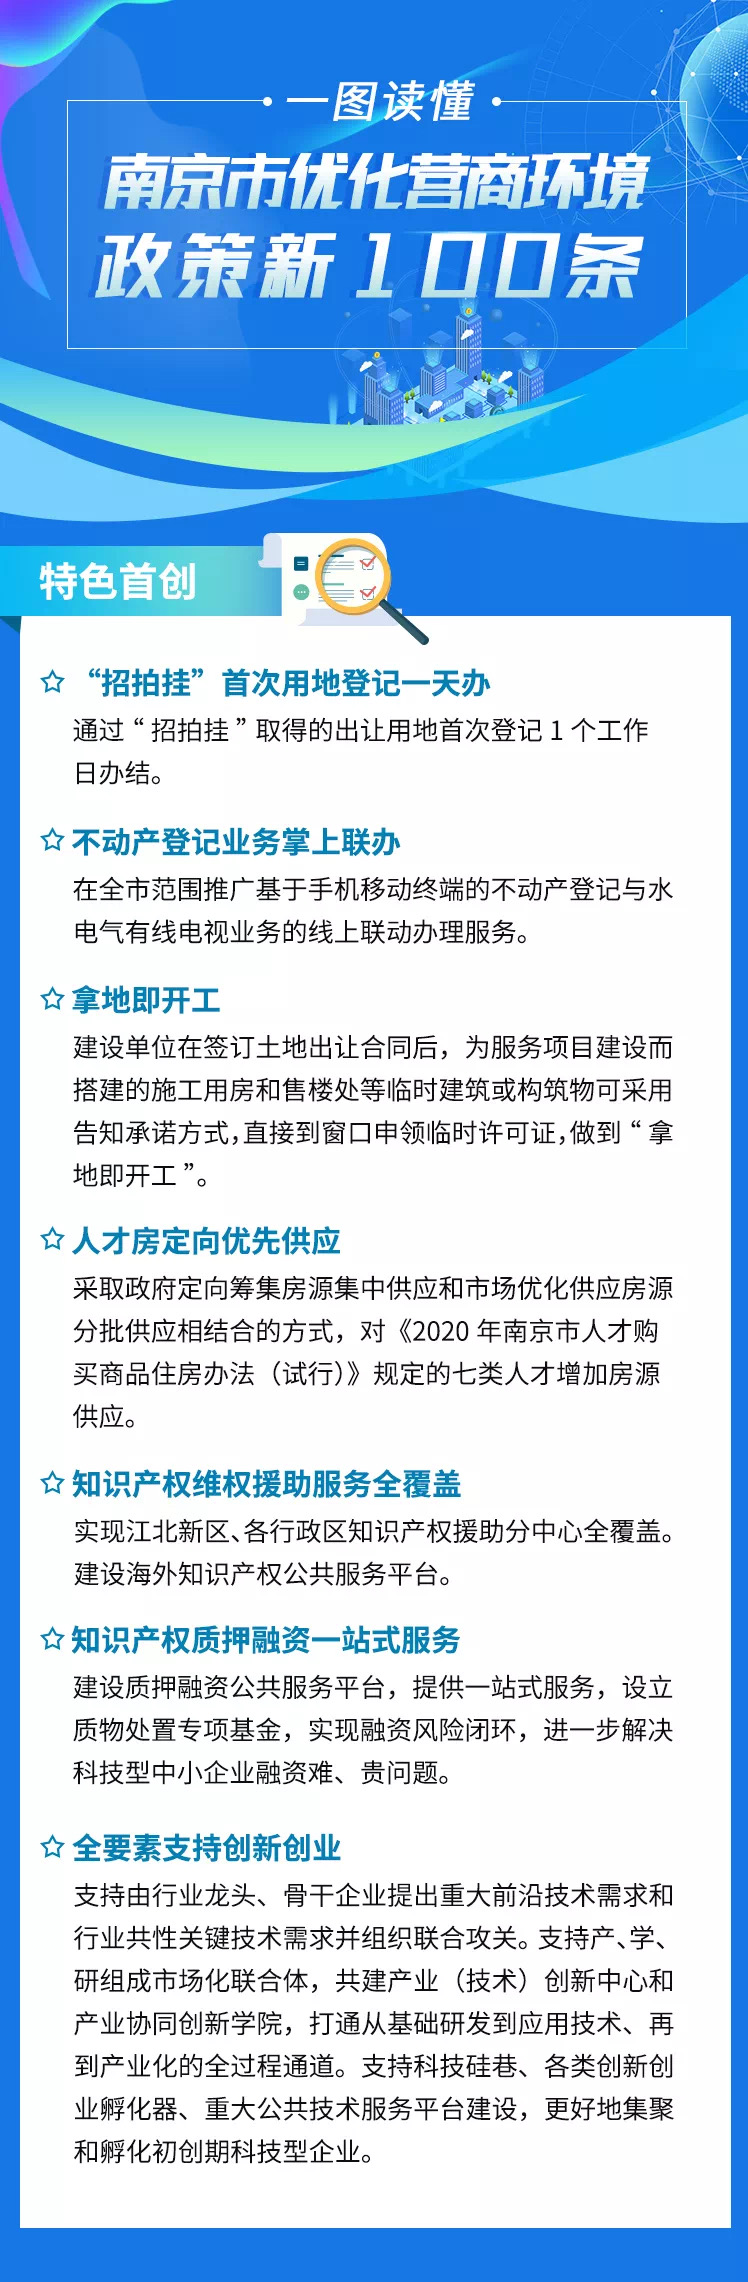 南京發布優化營商環境政策新100條7條措施全國首創